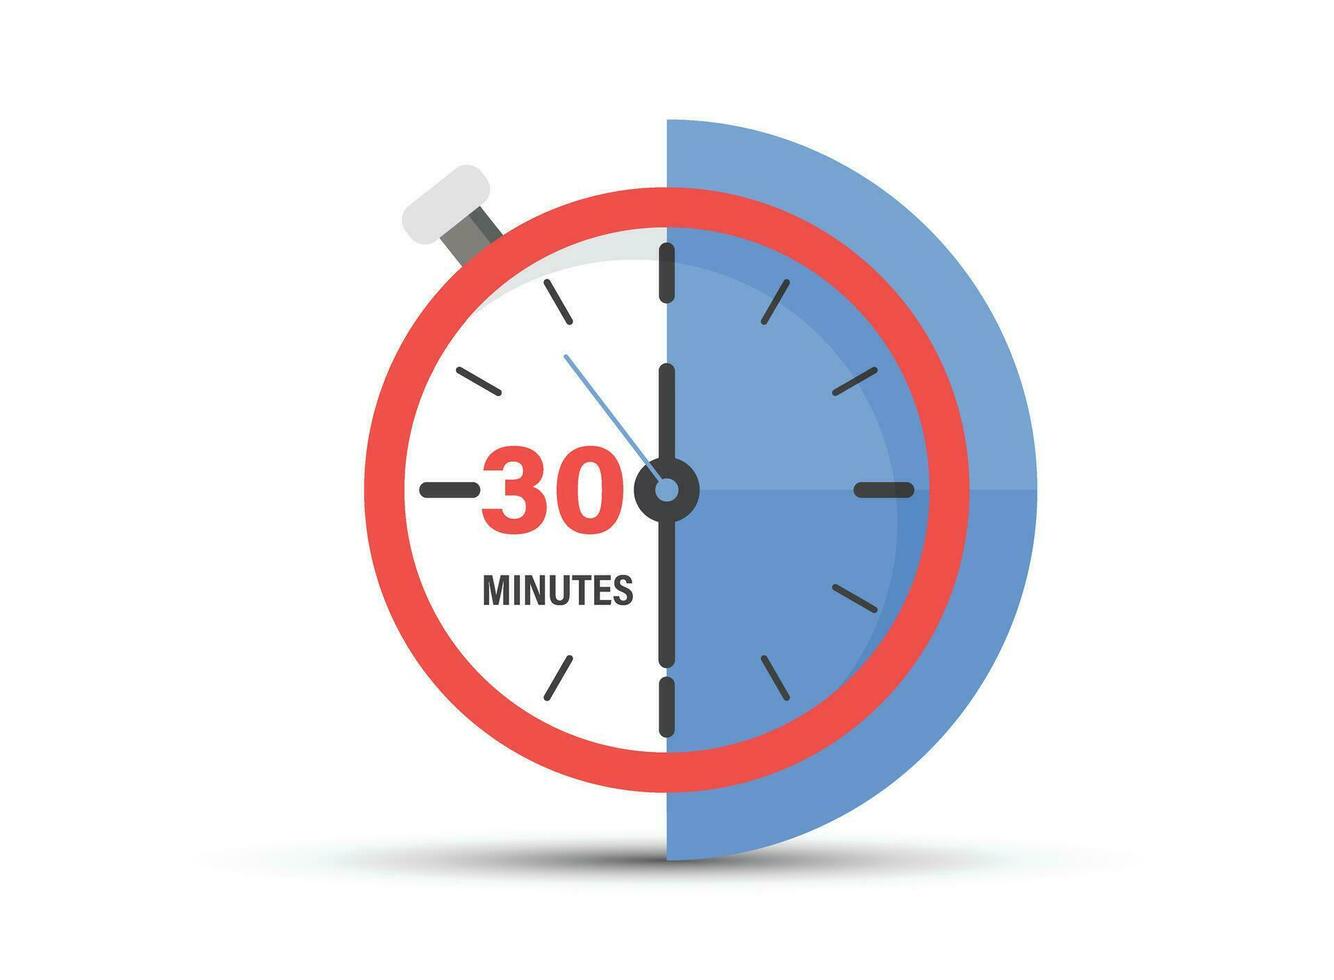 30 minuter på stoppur ikon i platt stil. klocka ansikte timer vektor illustration på isolerat bakgrund. nedräkning tecken företag begrepp.